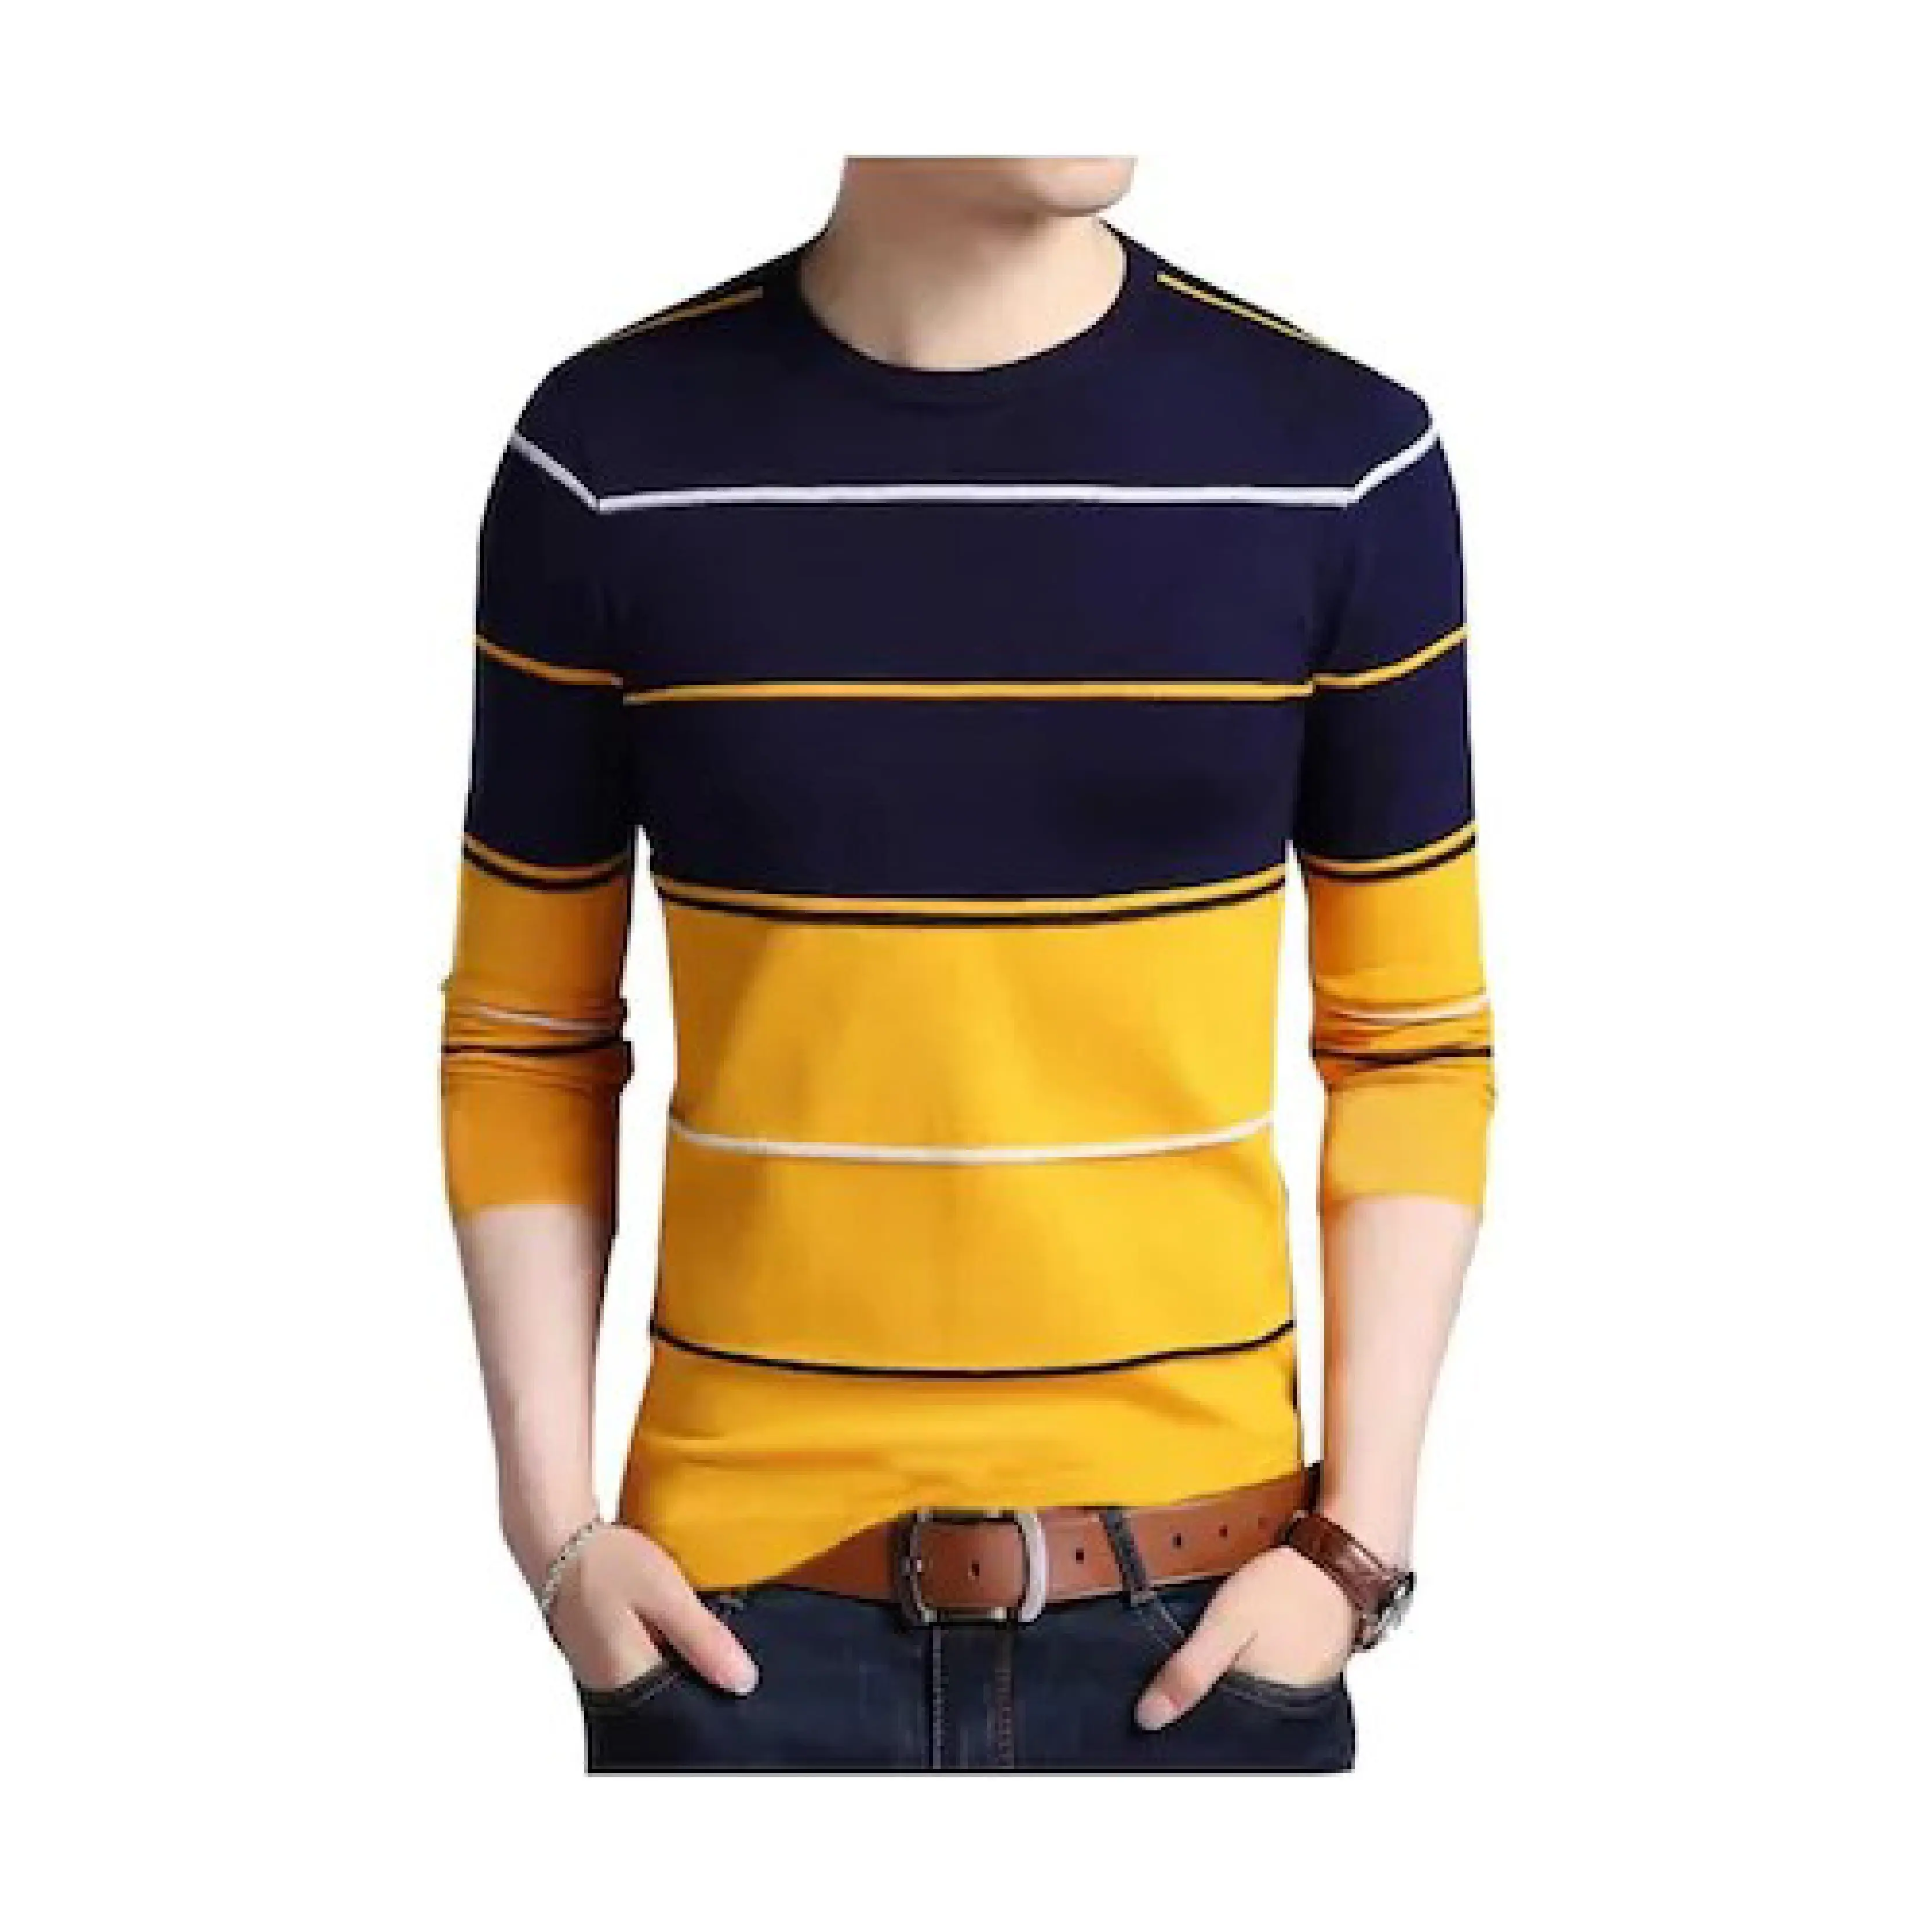 Neues Design Mesh Printed Safety Hochs ichtbare Sicherheit Polo T-Shirts Pantone Gelb Grün Rot Gewöhnlich fluor zierend Orange Blau